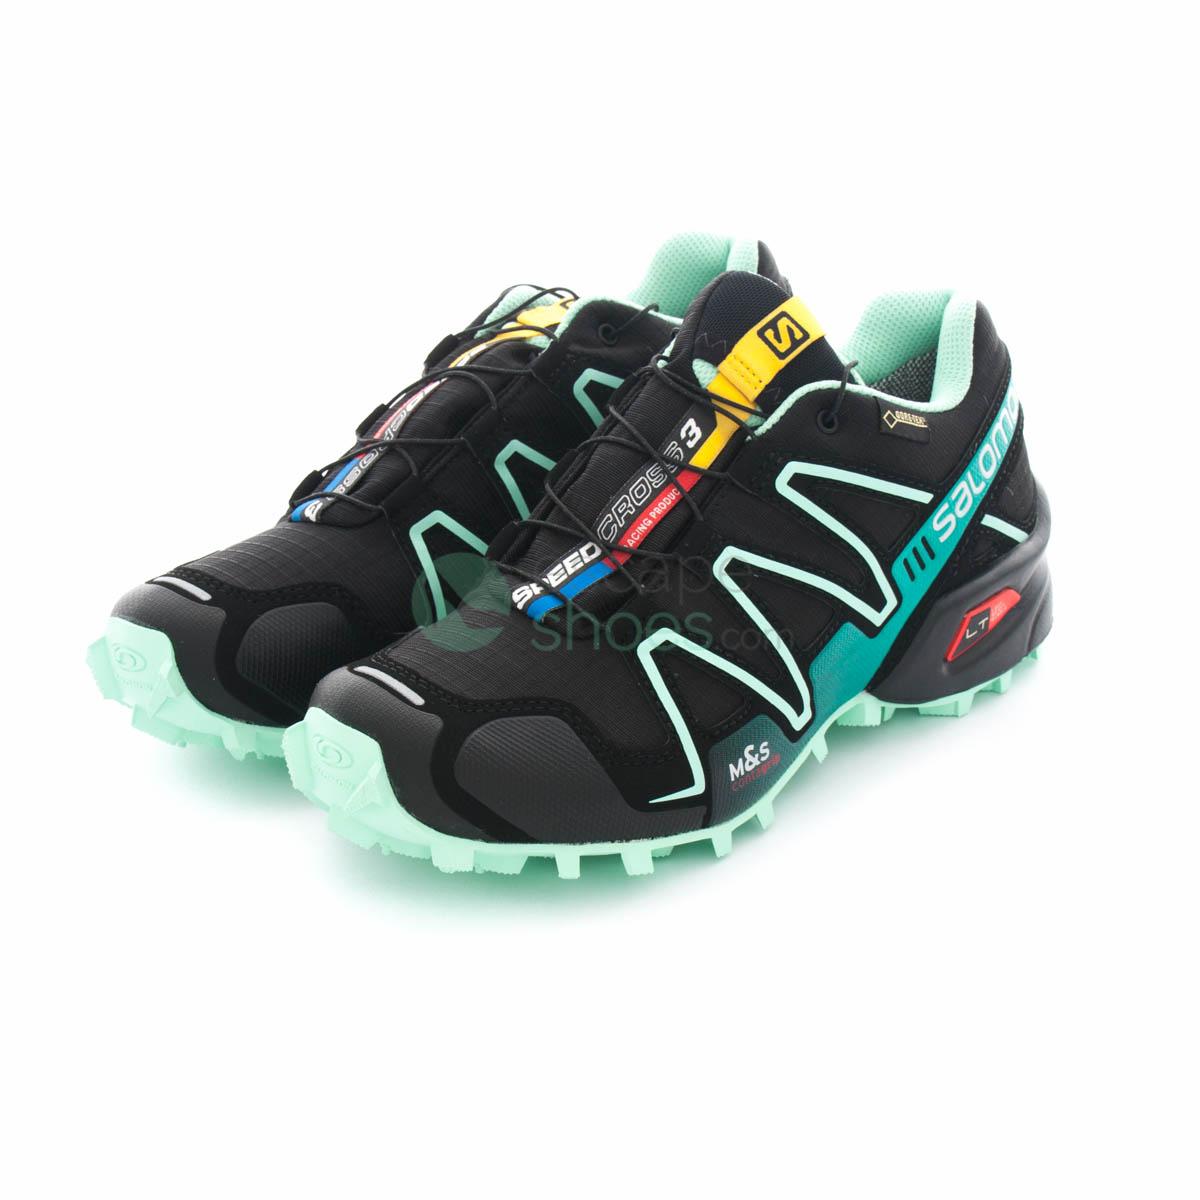 Refinería oportunidad Será Sneakers SALOMON Speedcross 3 Gore-Tex Black Lucite Green 381564